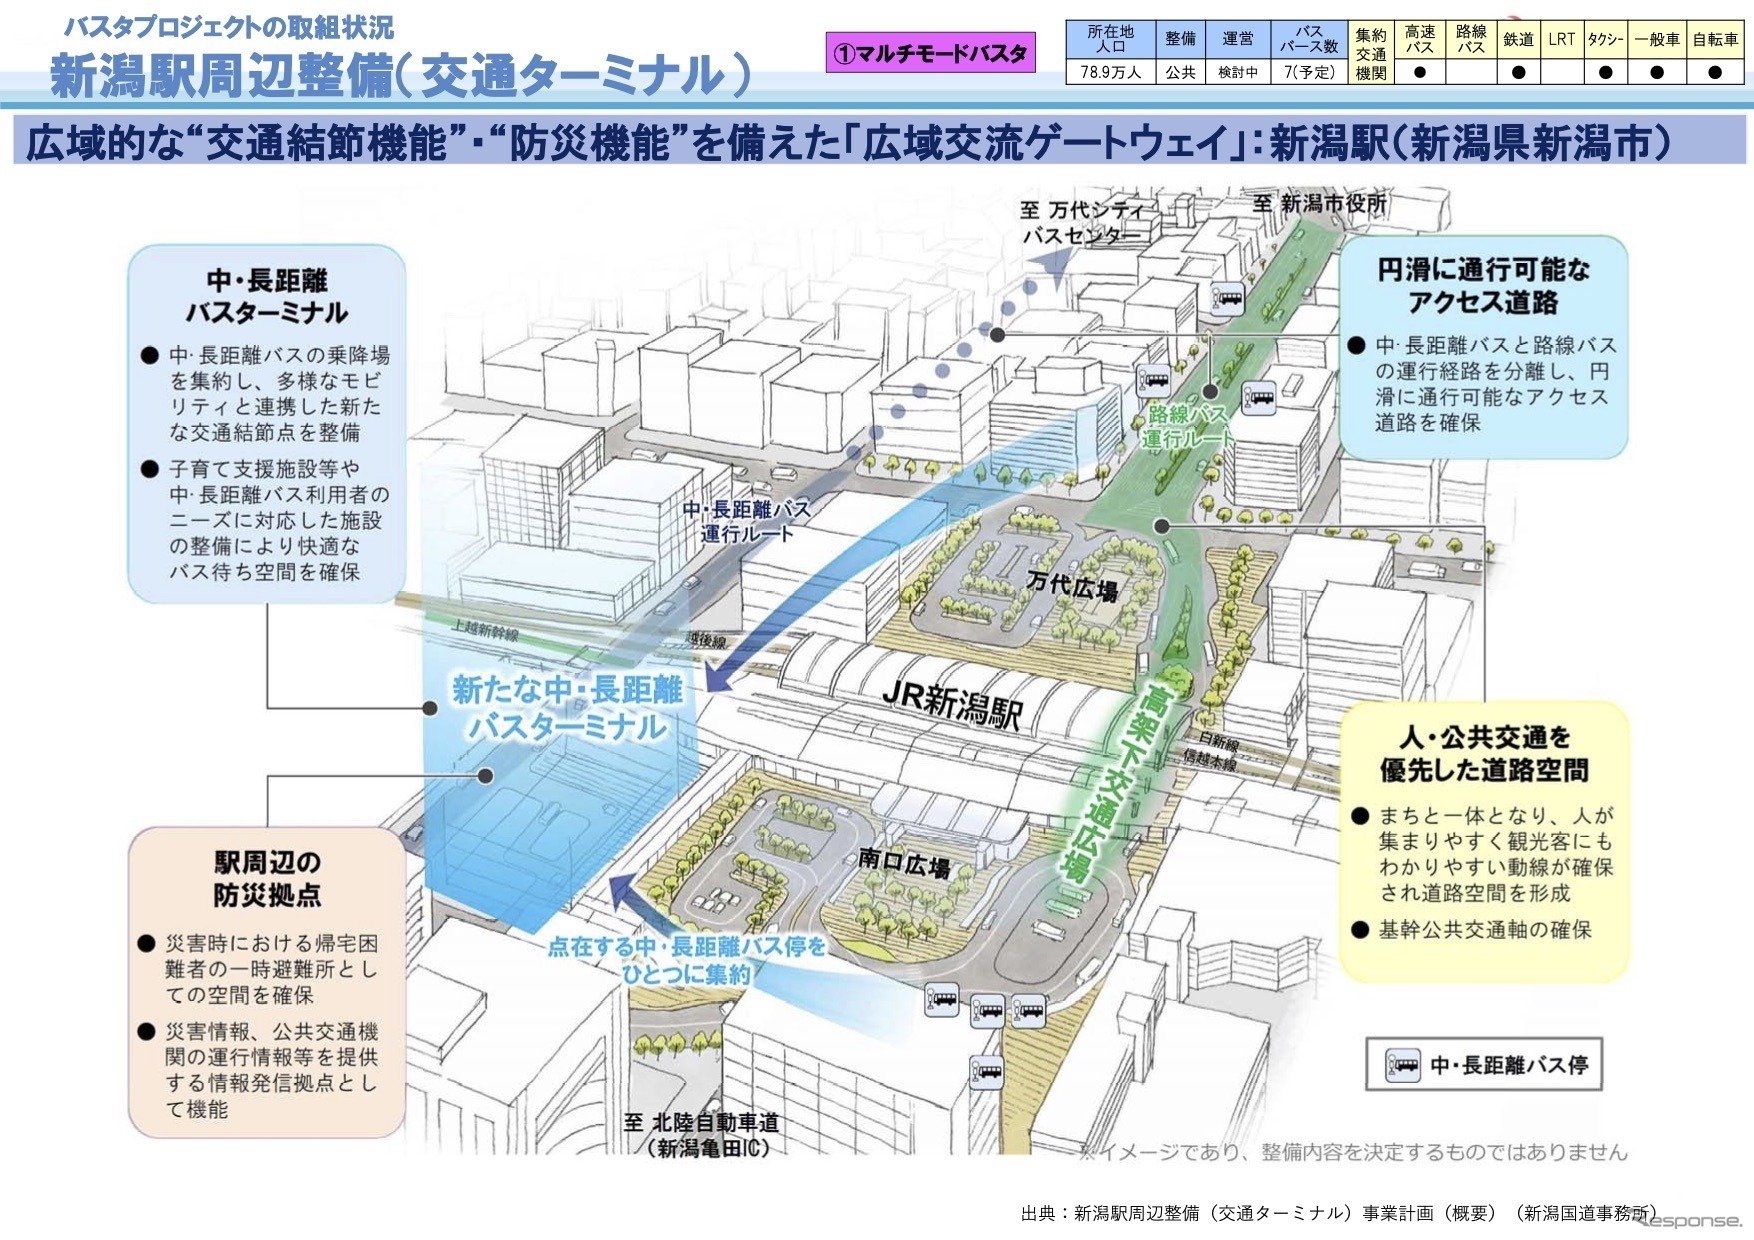 バスタプロジェクトの取組状況：新潟駅周辺整備（交通ターミナル）